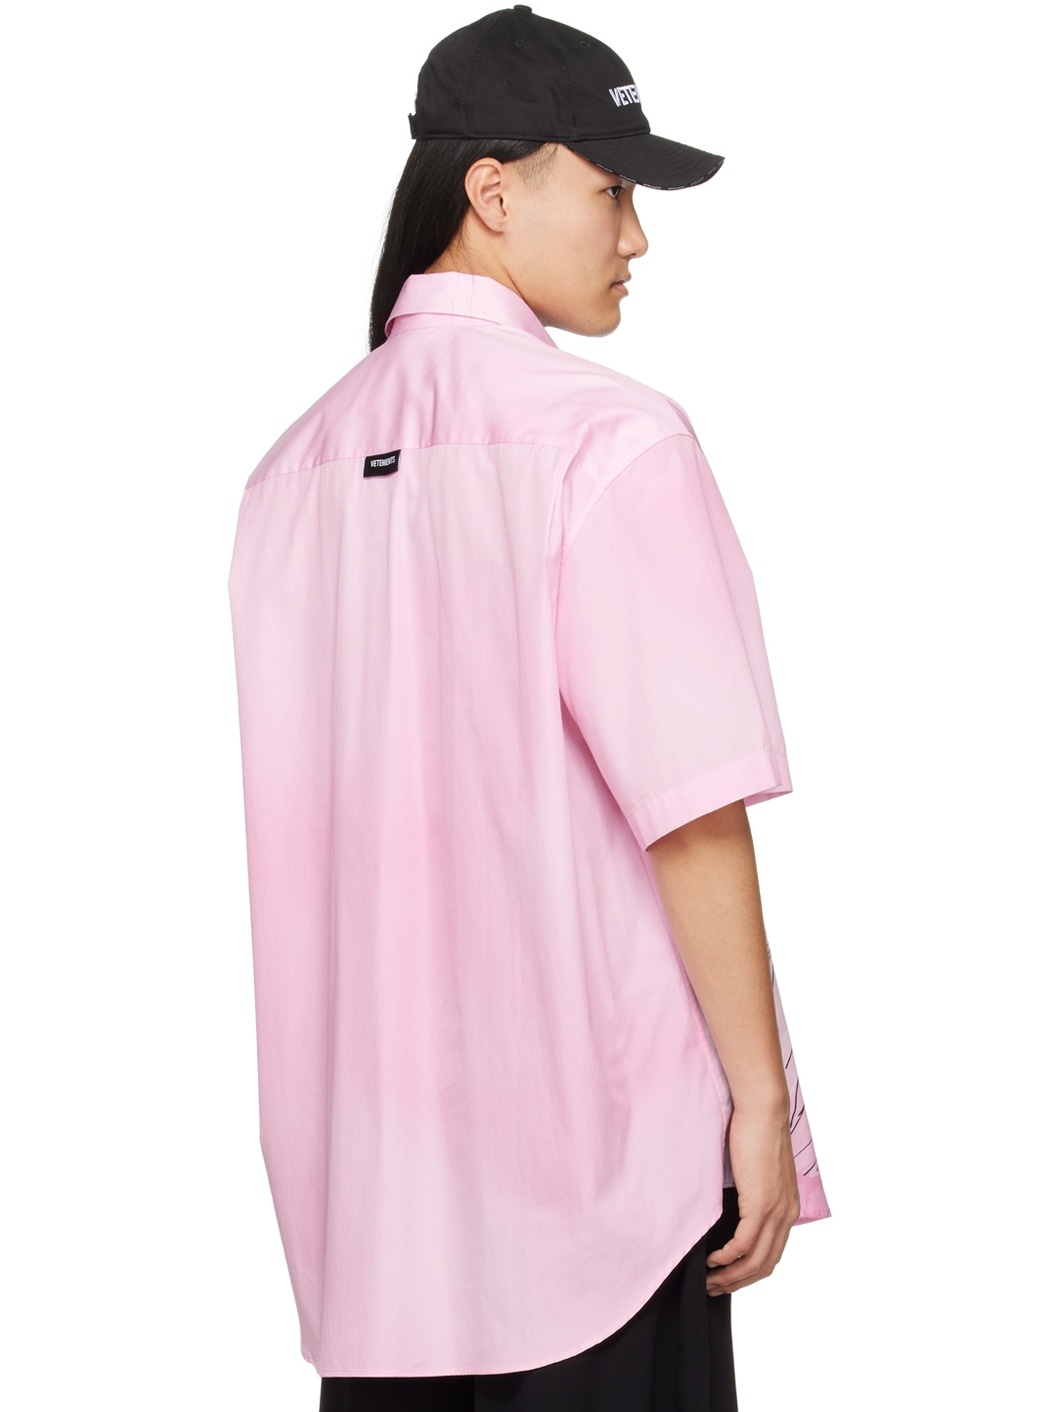 Pink Anime Shirt - 3